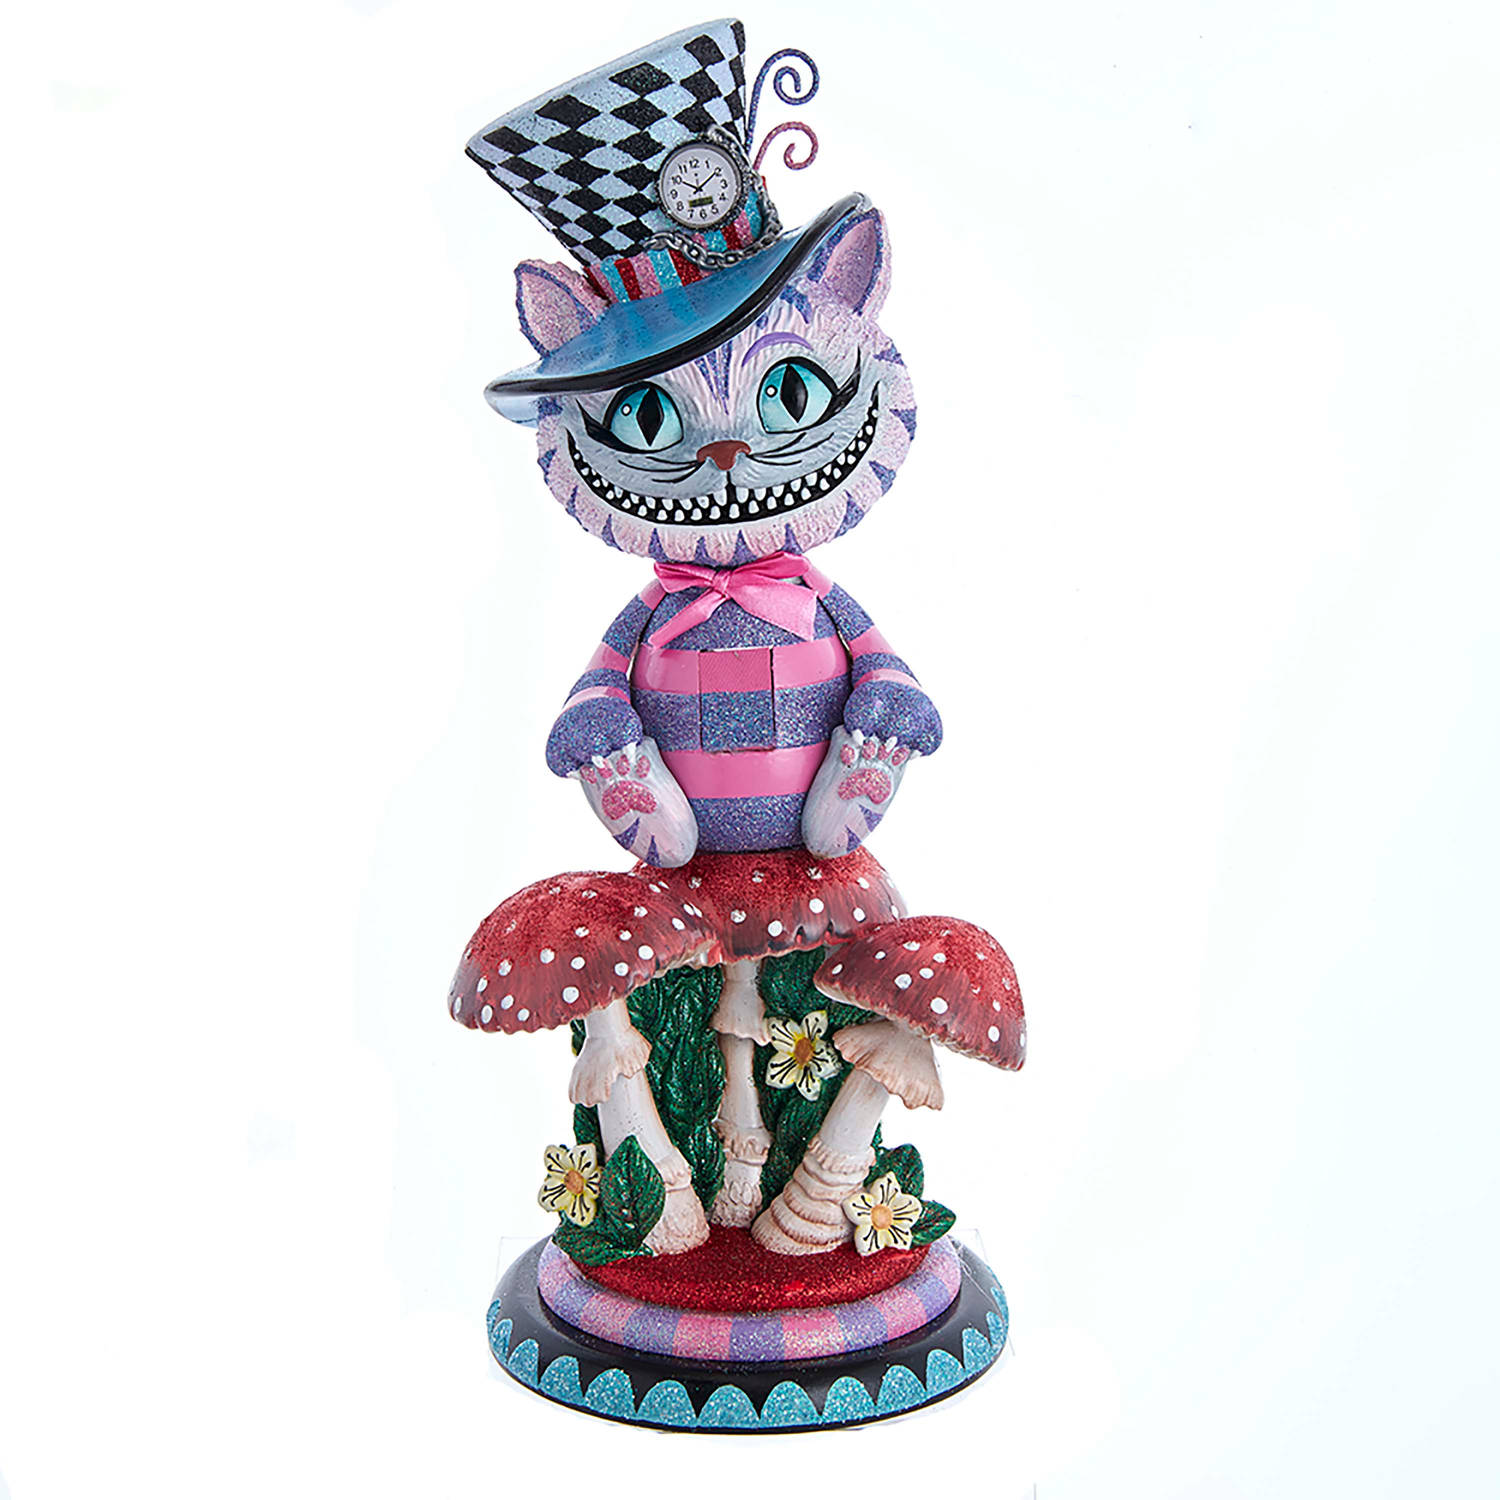 Kurt S. Adler - Notenkraker - Cheshire Cat (uit Alice in Wonderland)